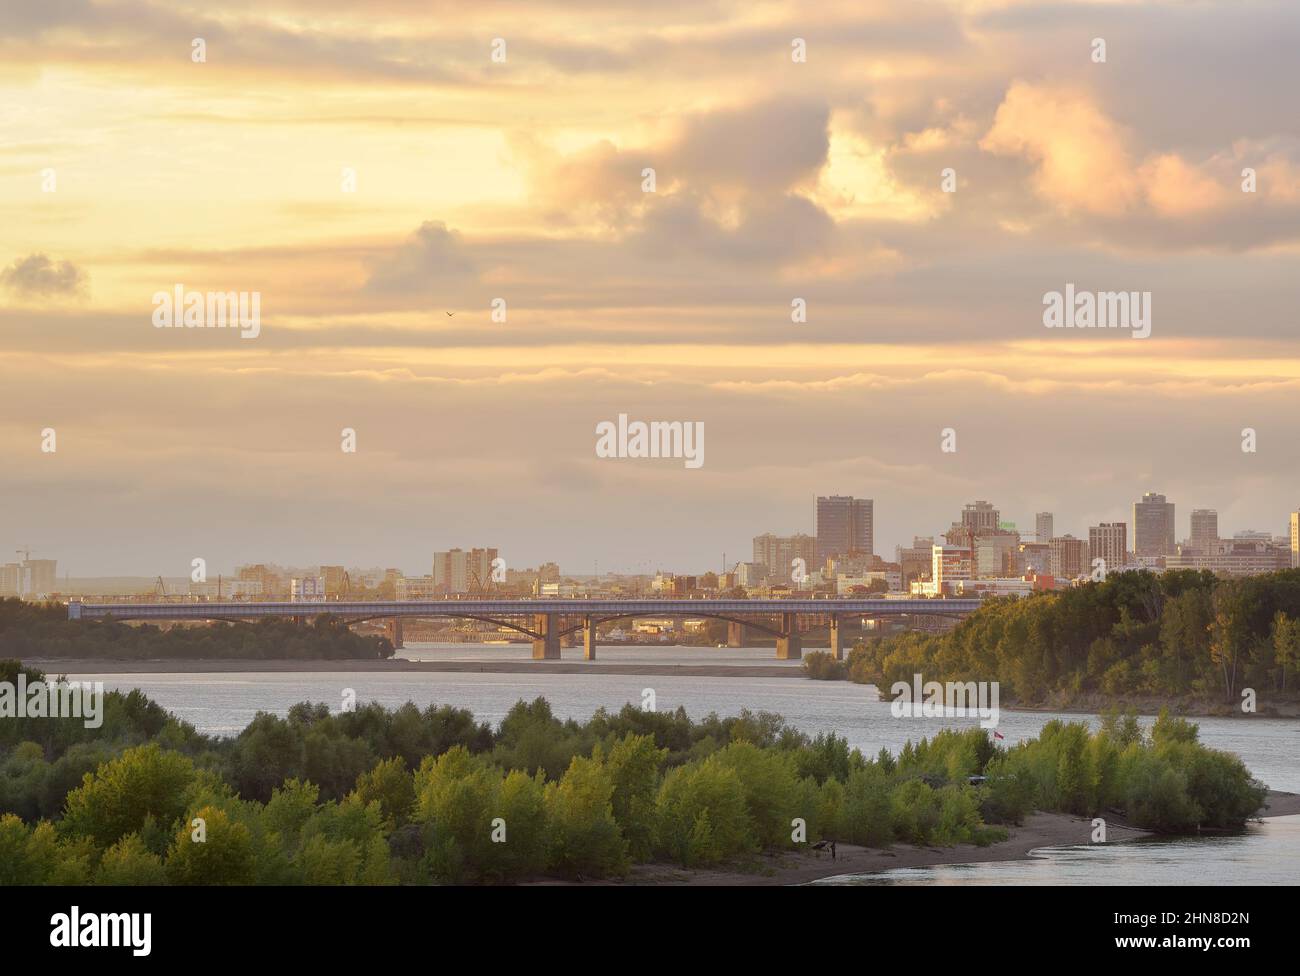 Región de Novosibirsk, Siberia, Rusia - 09.20.2020: La capital de Siberia en el gran río Siberiano, puentes sobre el agua, exuberante vegetación en el río I. Foto de stock